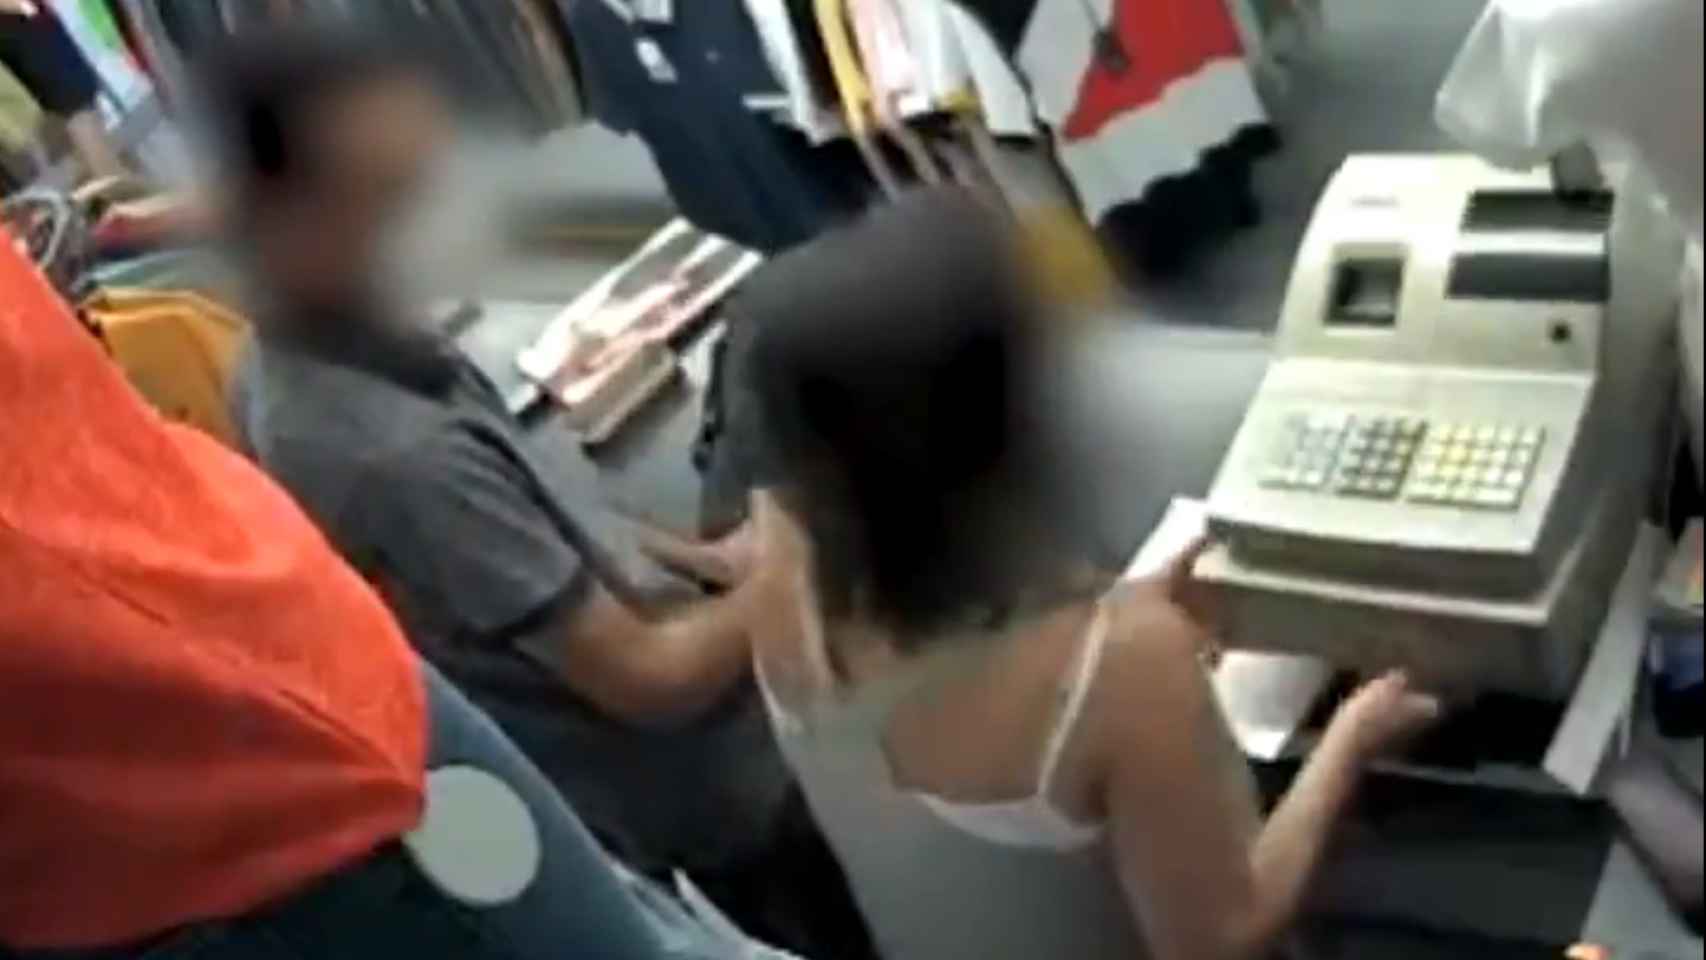 Imágenes del robo con violencia en una tienda de L'Hospitalet de Llobregat / MOSSOS